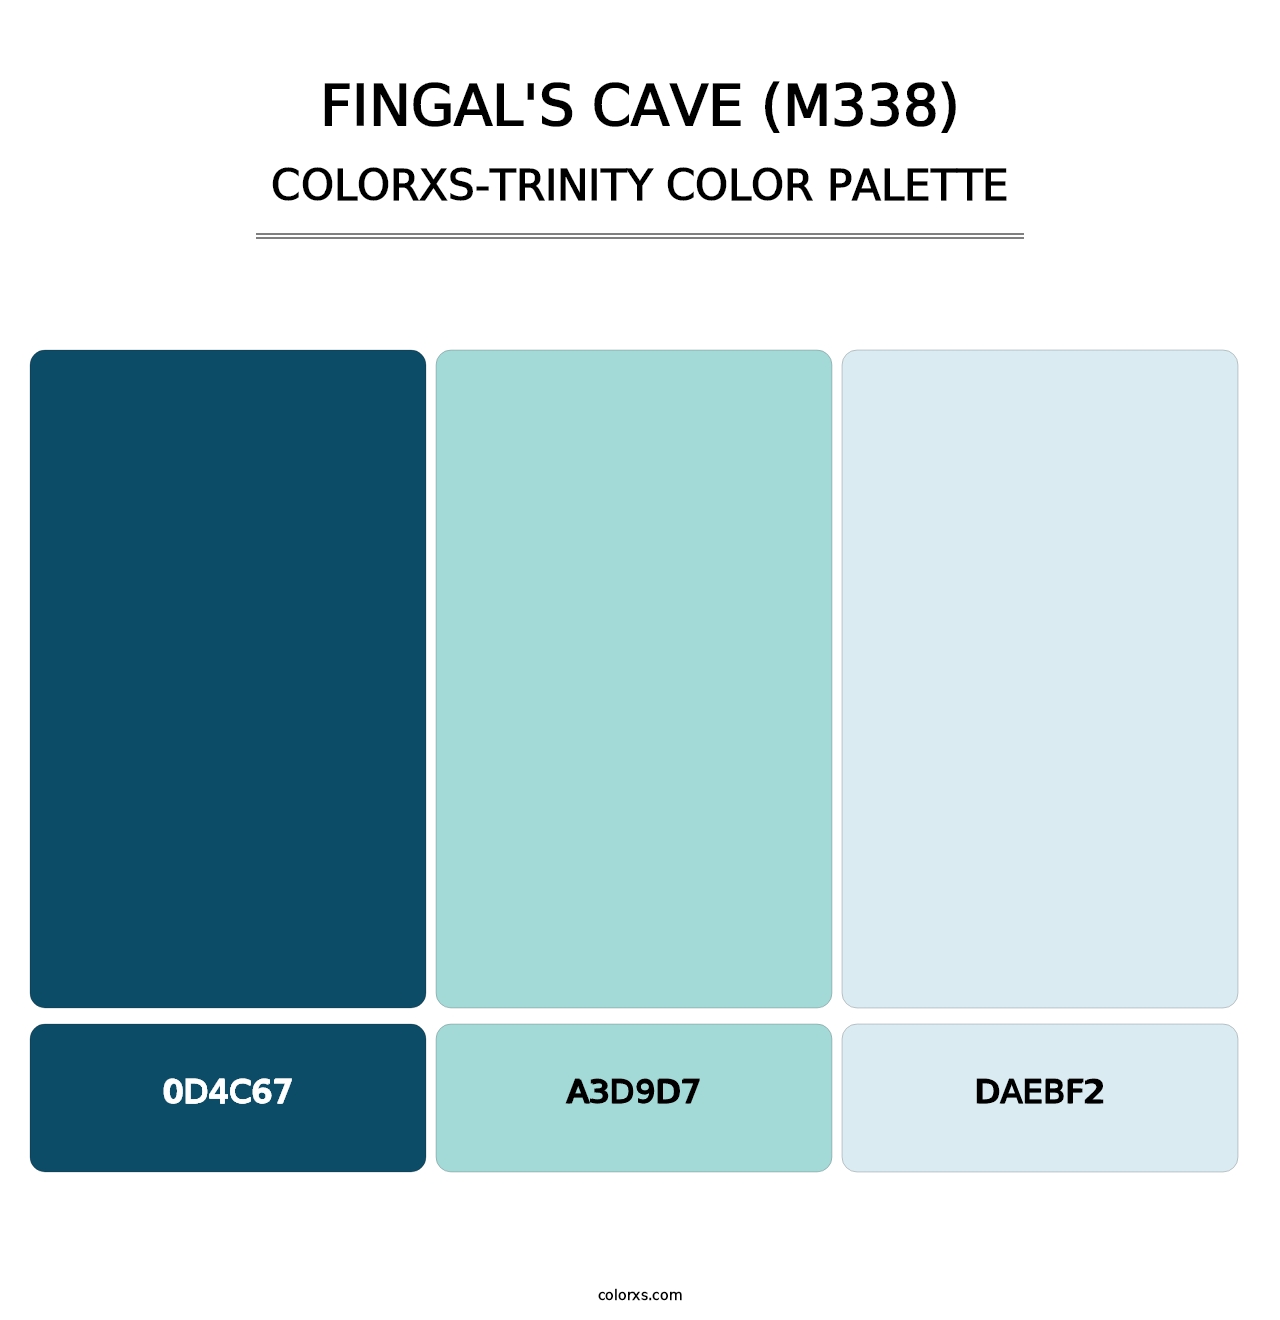 Fingal's Cave (M338) - Colorxs Trinity Palette